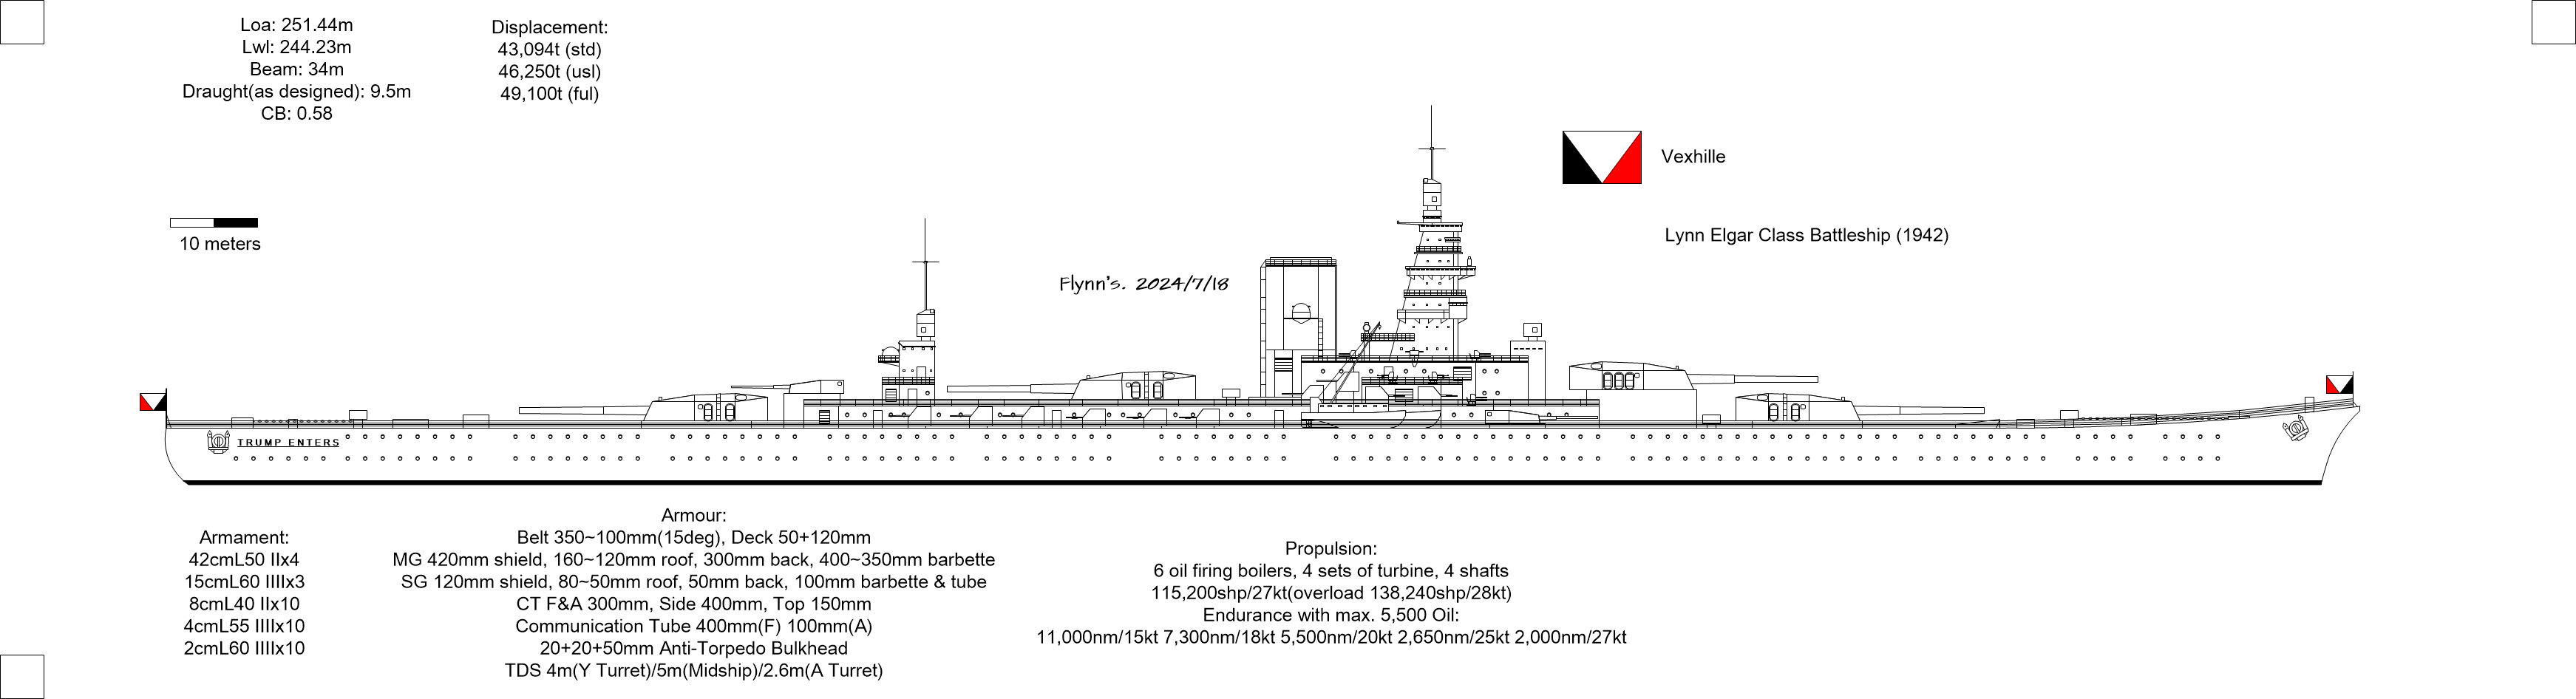 (架空)维克希里帝国1938年度45万吨战列舰计划:林·埃尔加级